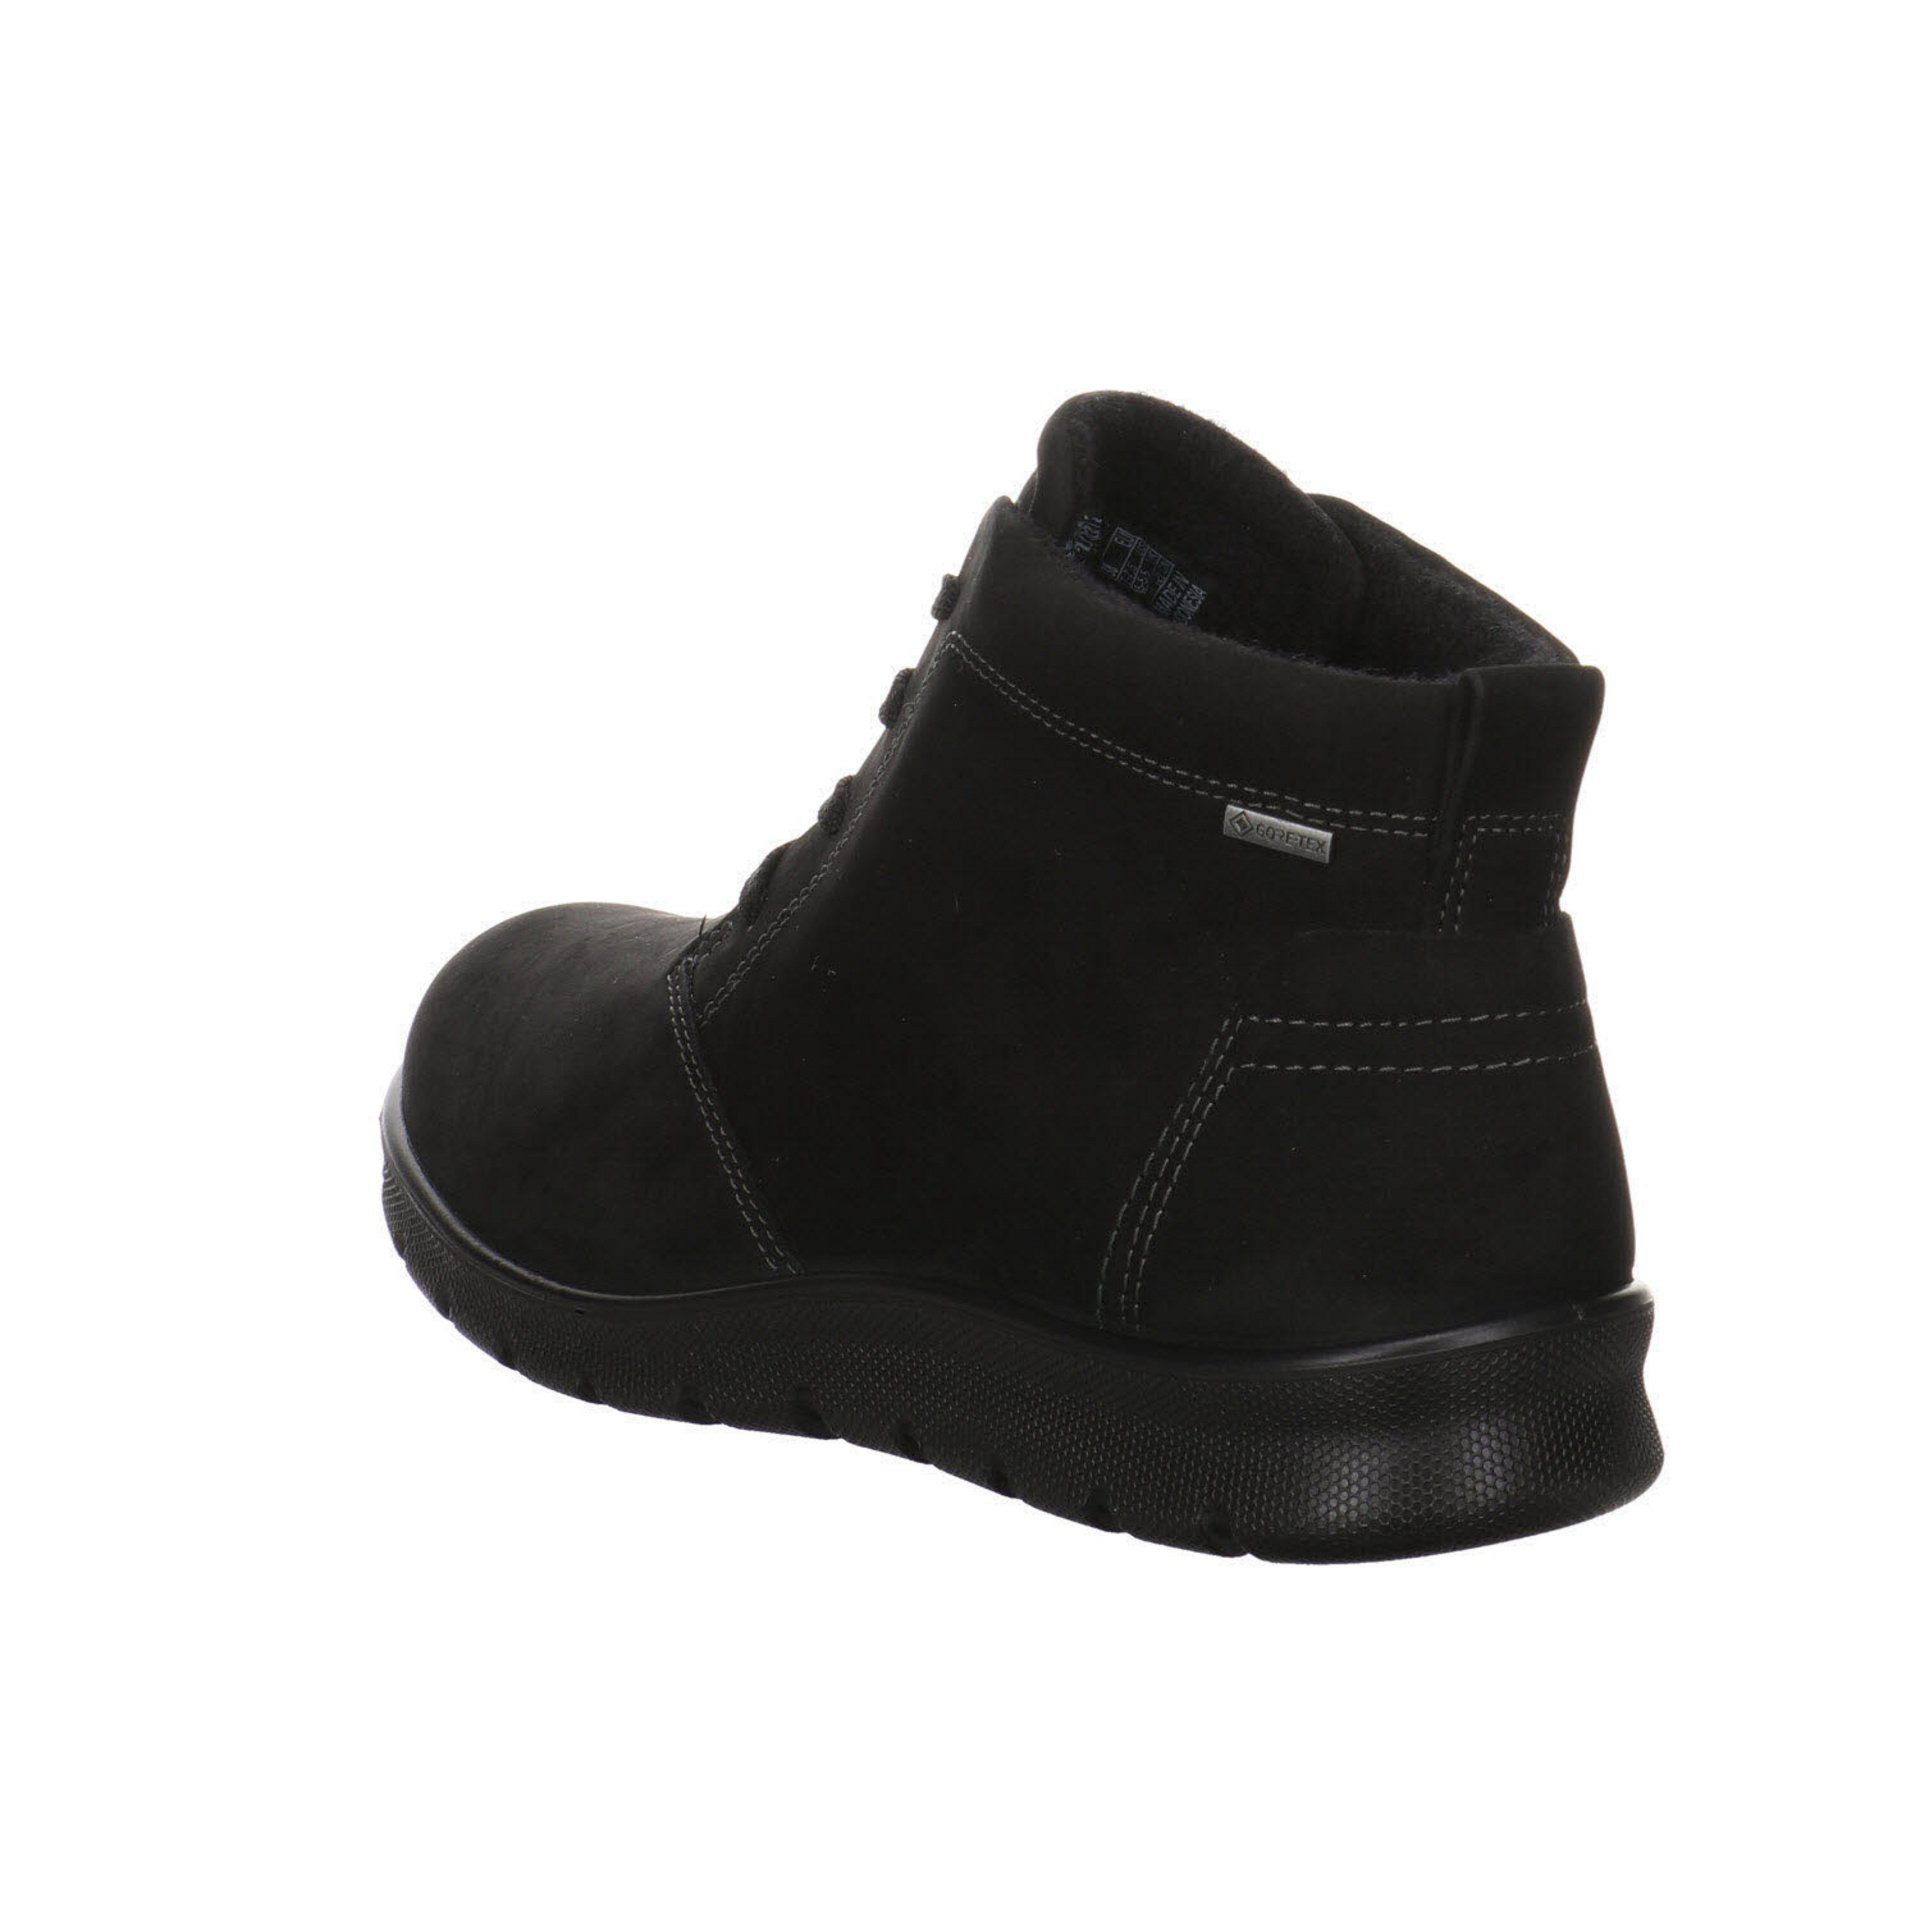 Babett black Boots Stiefeletten Schuhe Damen Ecco Nubukleder Schnürstiefelette